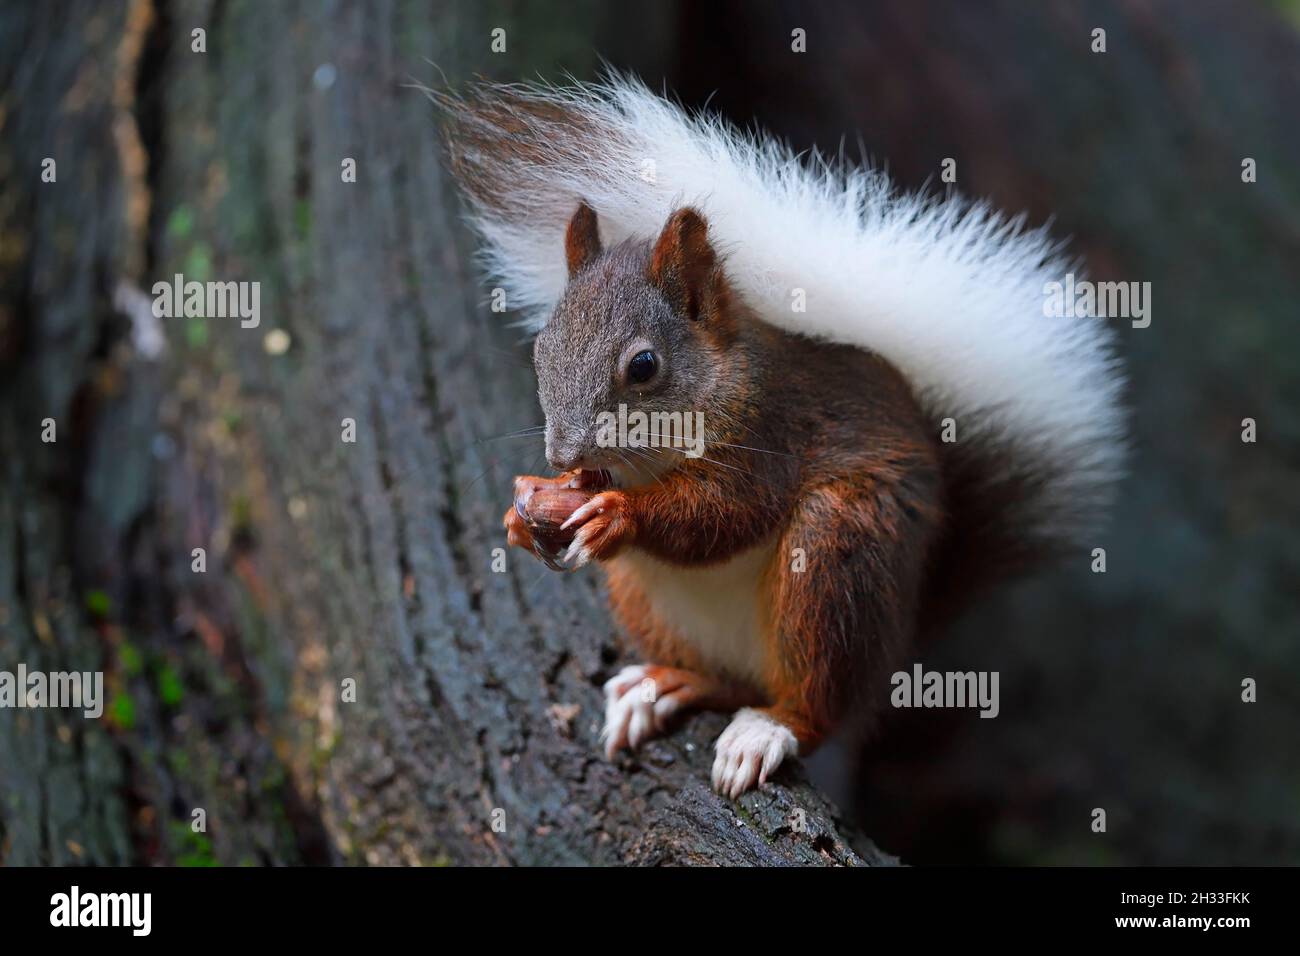 Eichhörnchen (Sciurus vulgaris), mit weissem Schwanz, Albinismuserscheinung, frisst Nuss, Brandeburgo, Germania Foto Stock